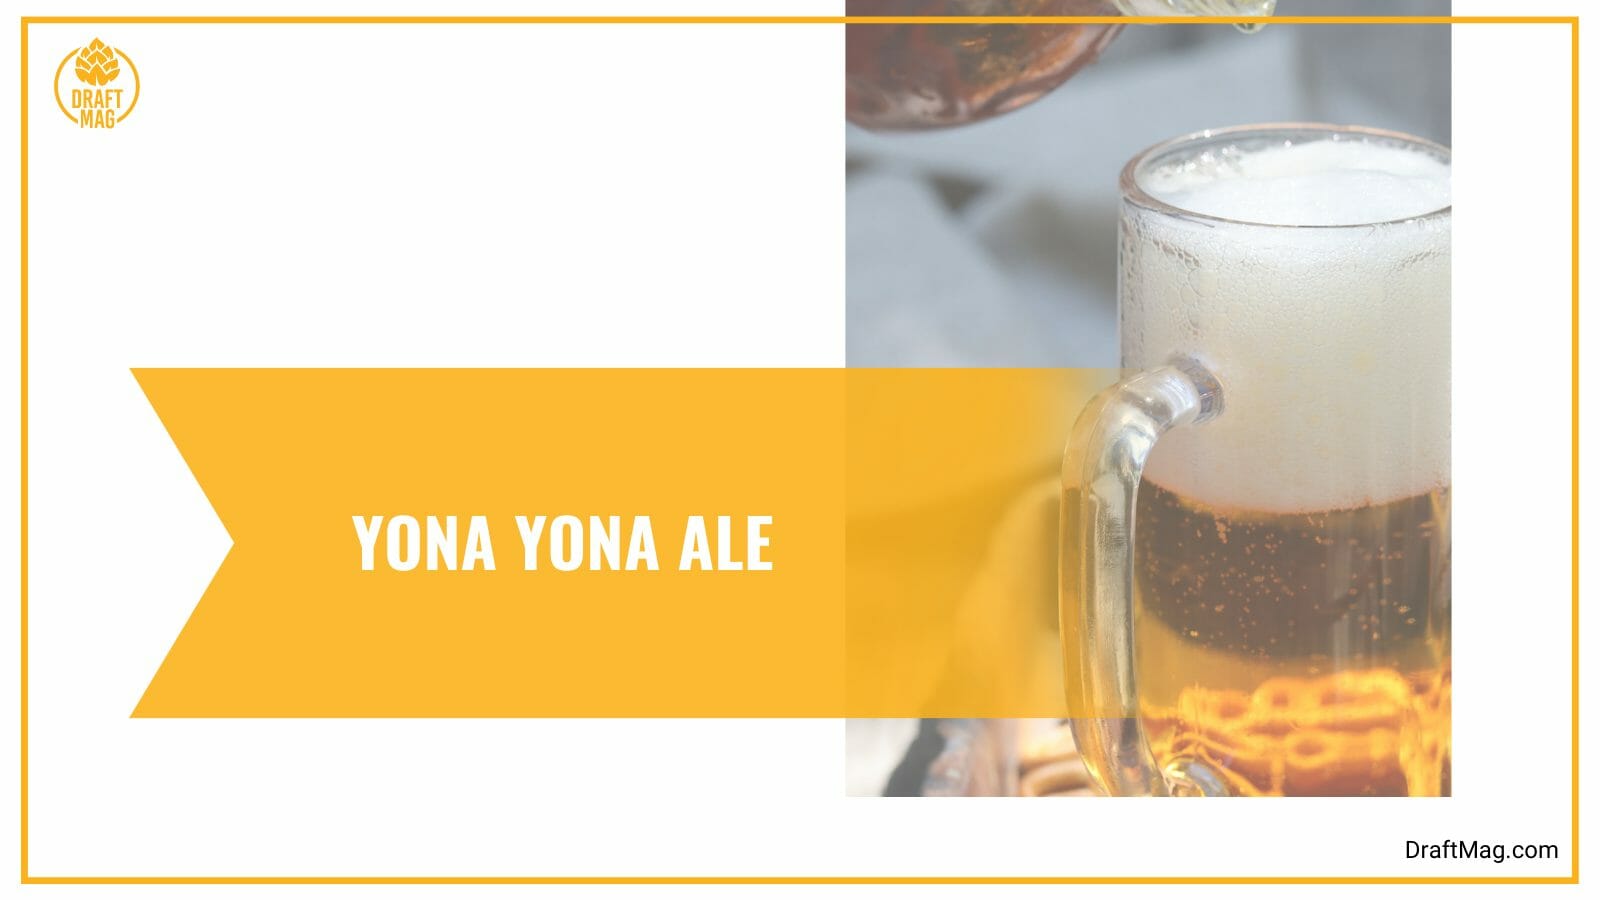 Yona yona ale